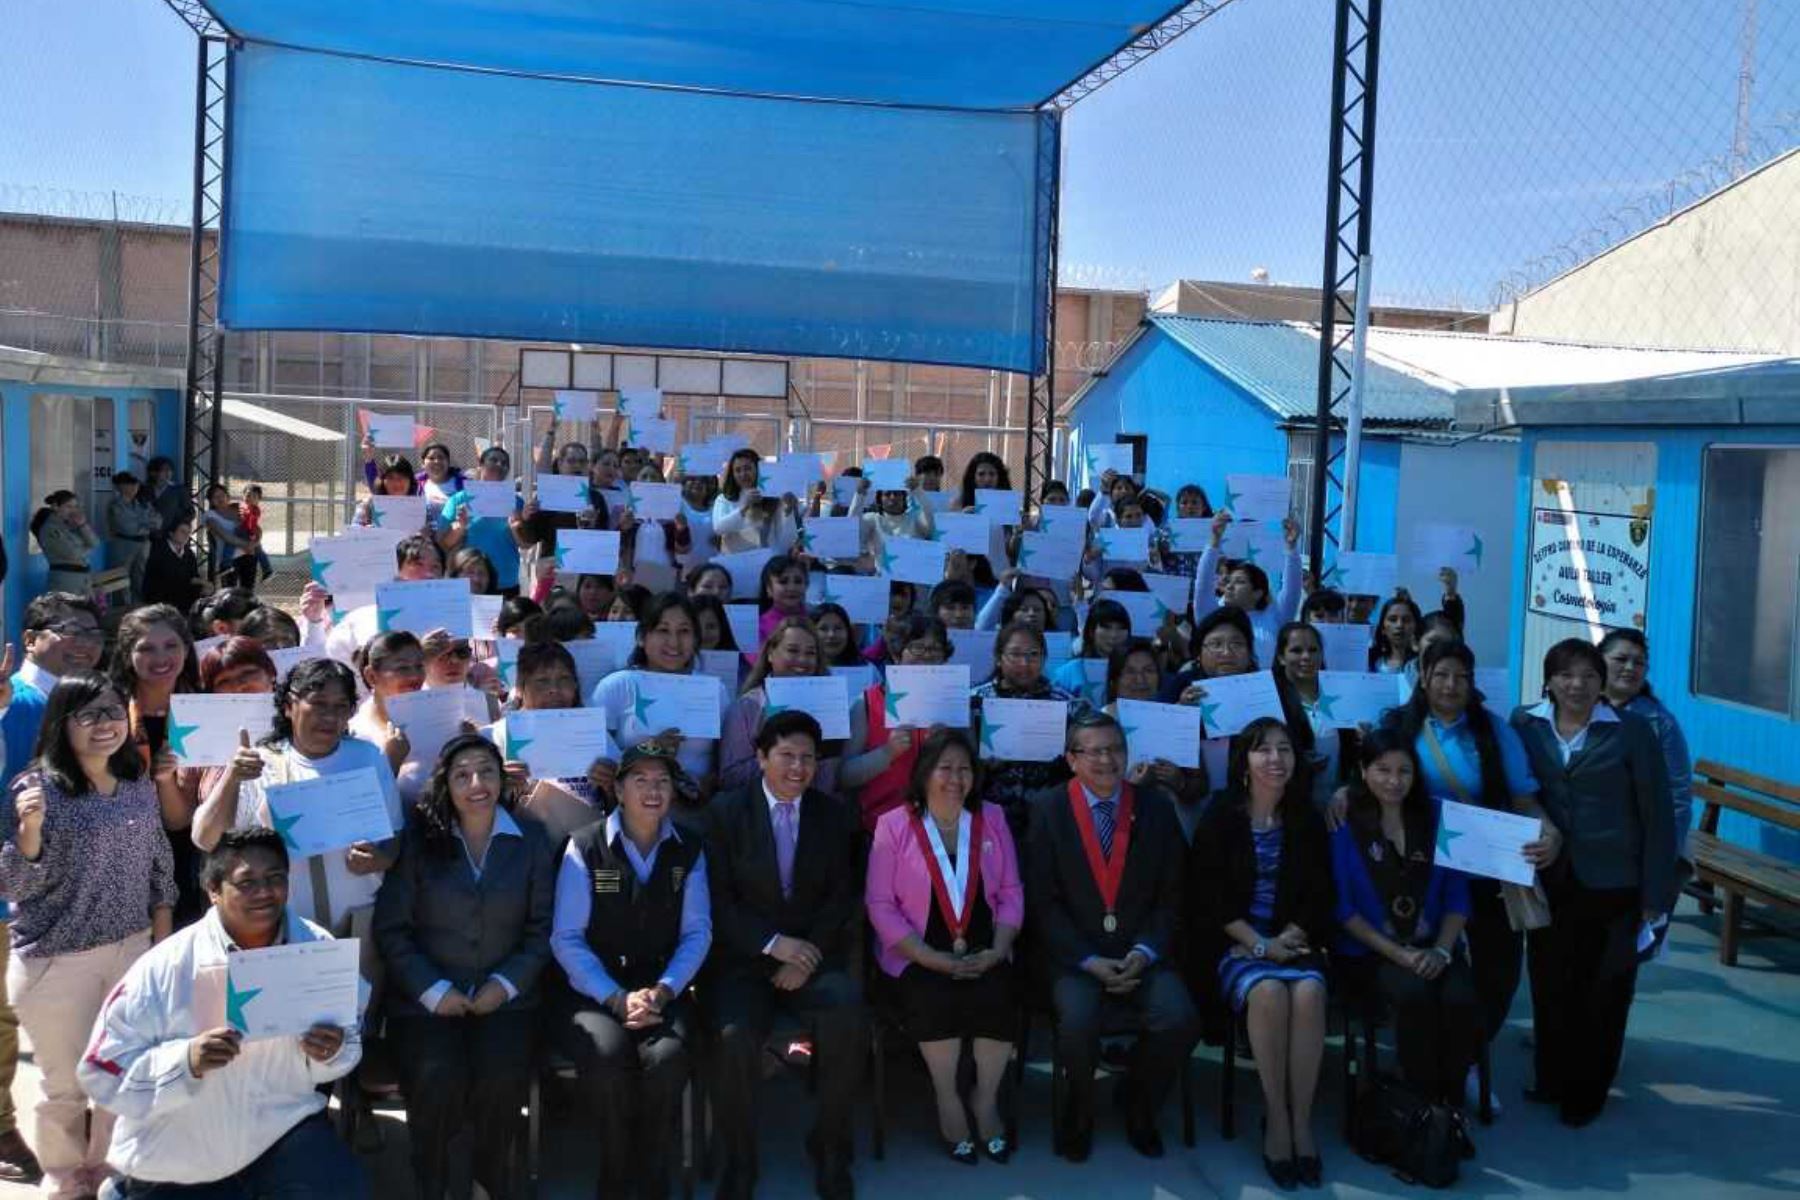 Ciento once internas del penal de mujeres de Arequipa recibieron la certificación en gestión empresarial, tras haber recibido la capacitación denominada “Creador de negocios para mujeres”, luego de cuatro meses de instrucción y posterior evaluación realizada por los profesionales del Programa Dream Builder.